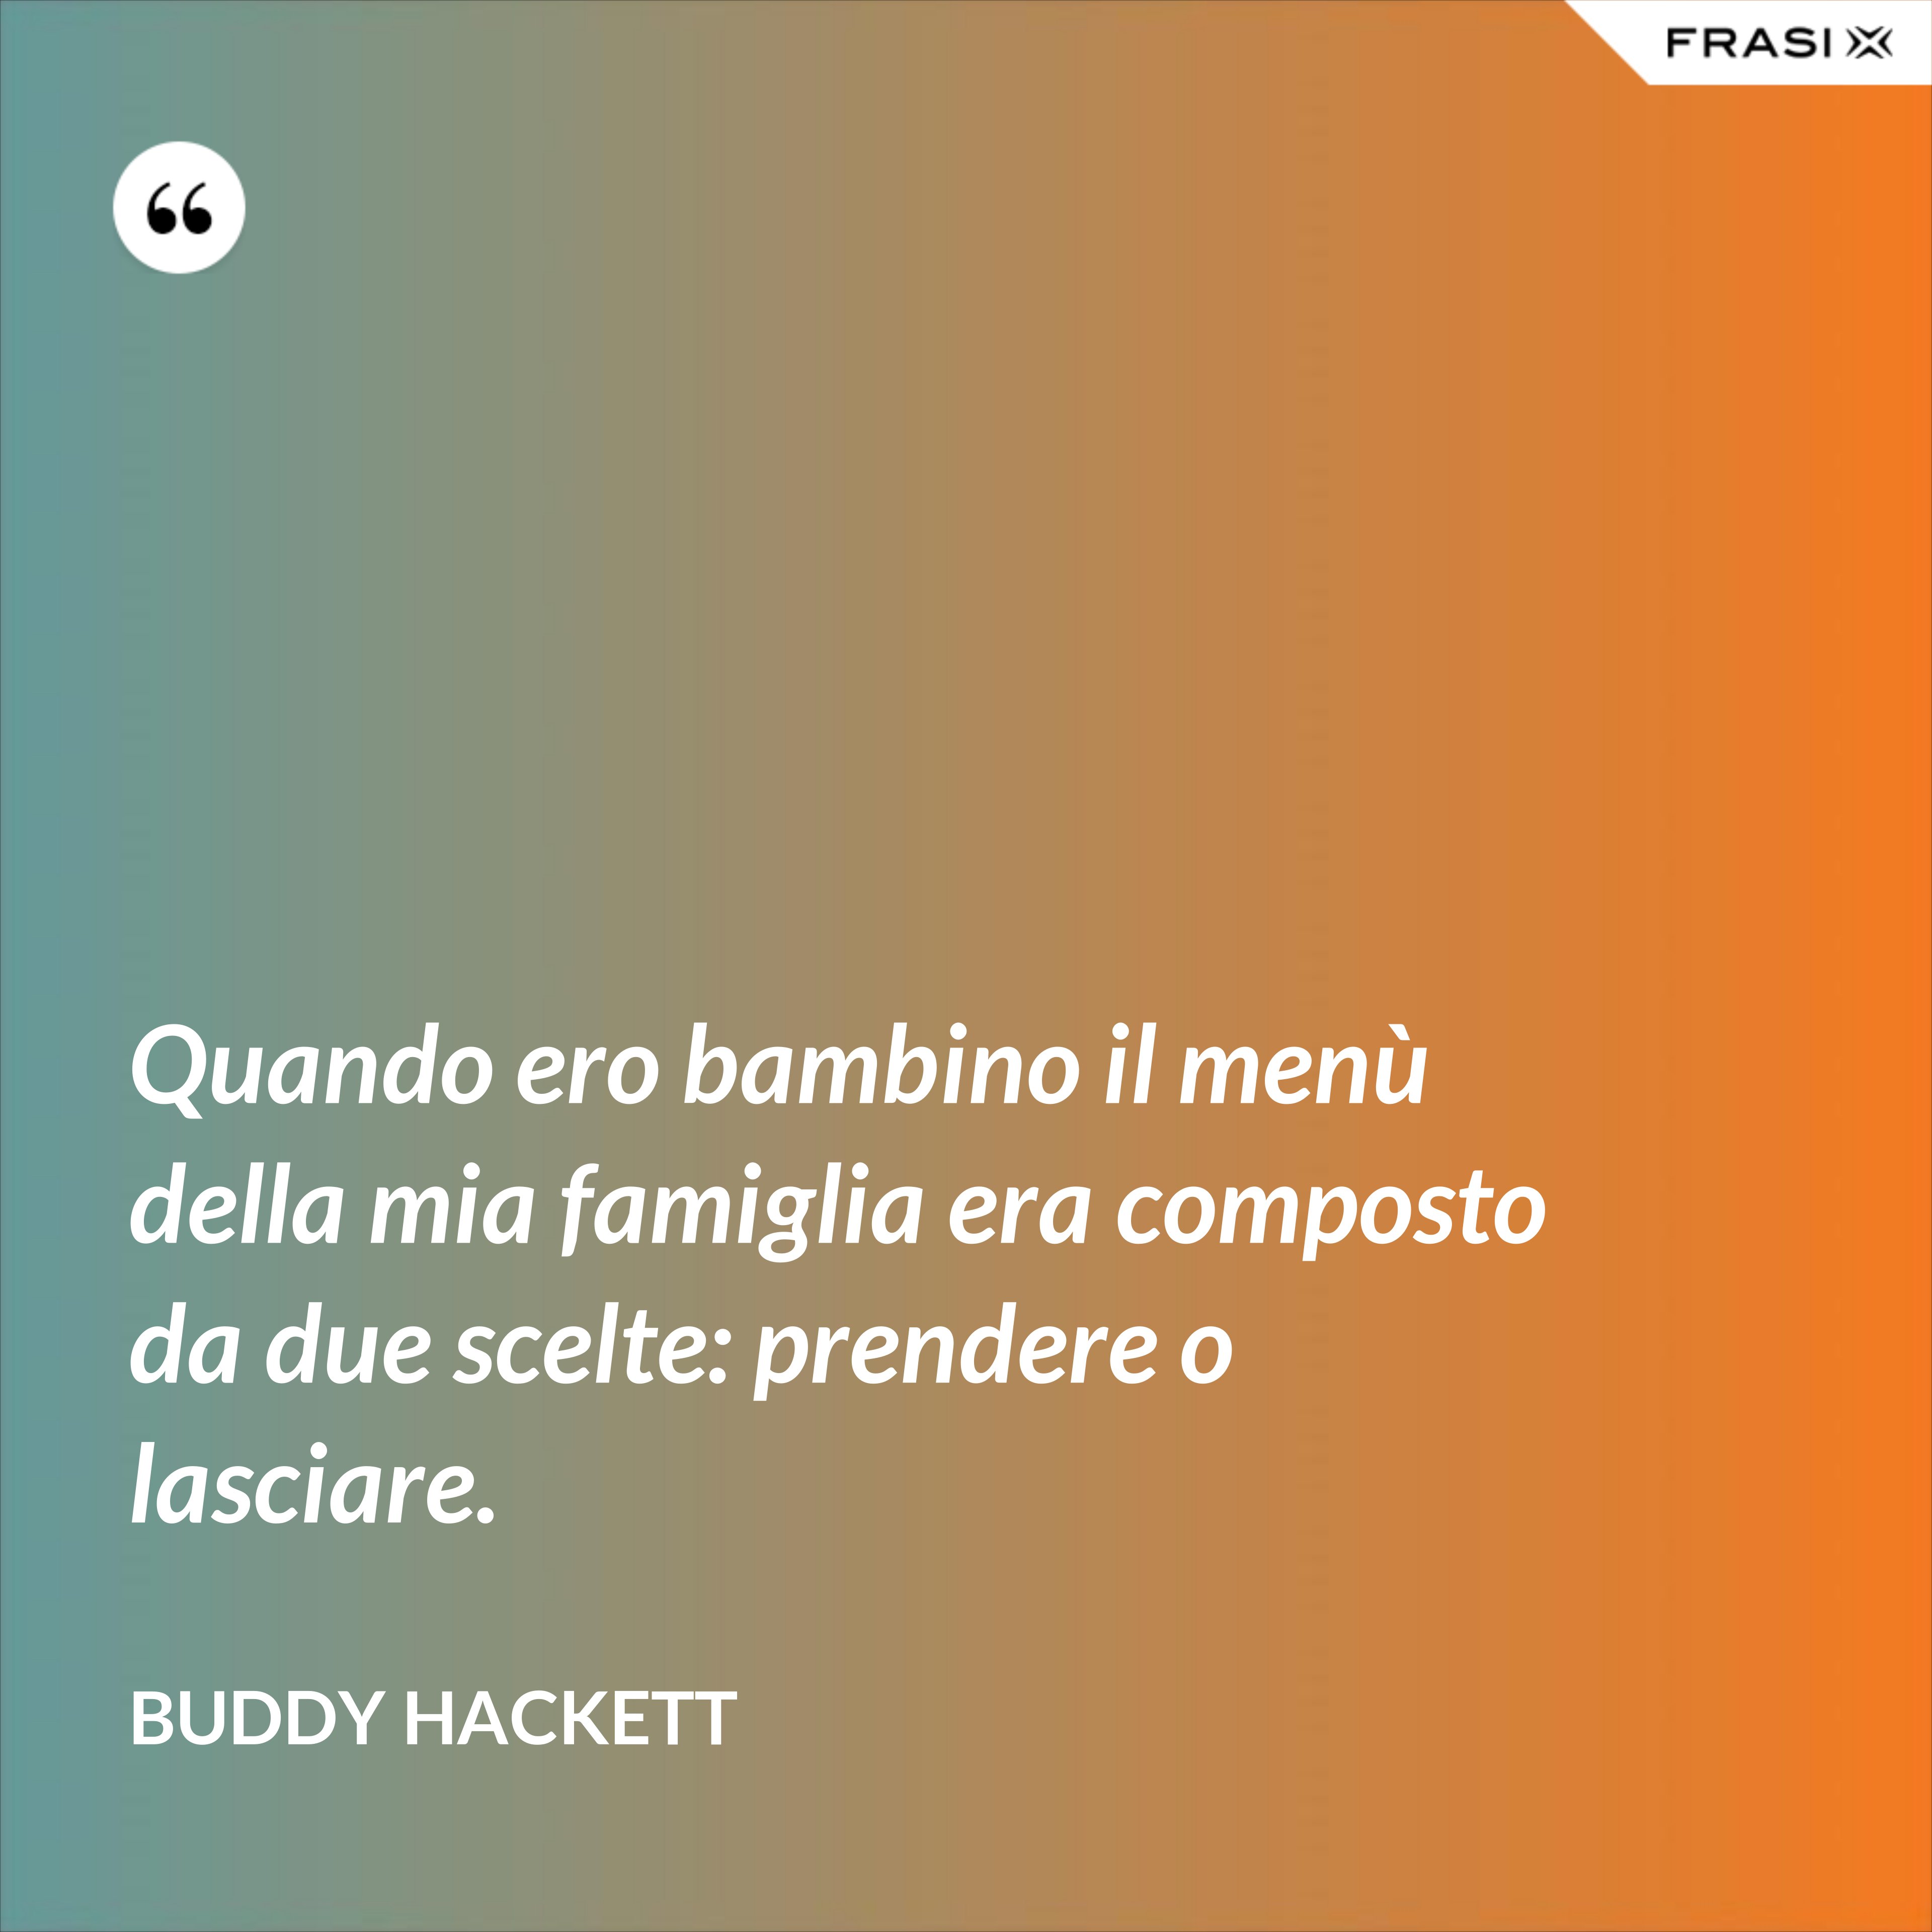 Quando ero bambino il menù della mia famiglia era composto da due scelte: prendere o lasciare. - Buddy Hackett